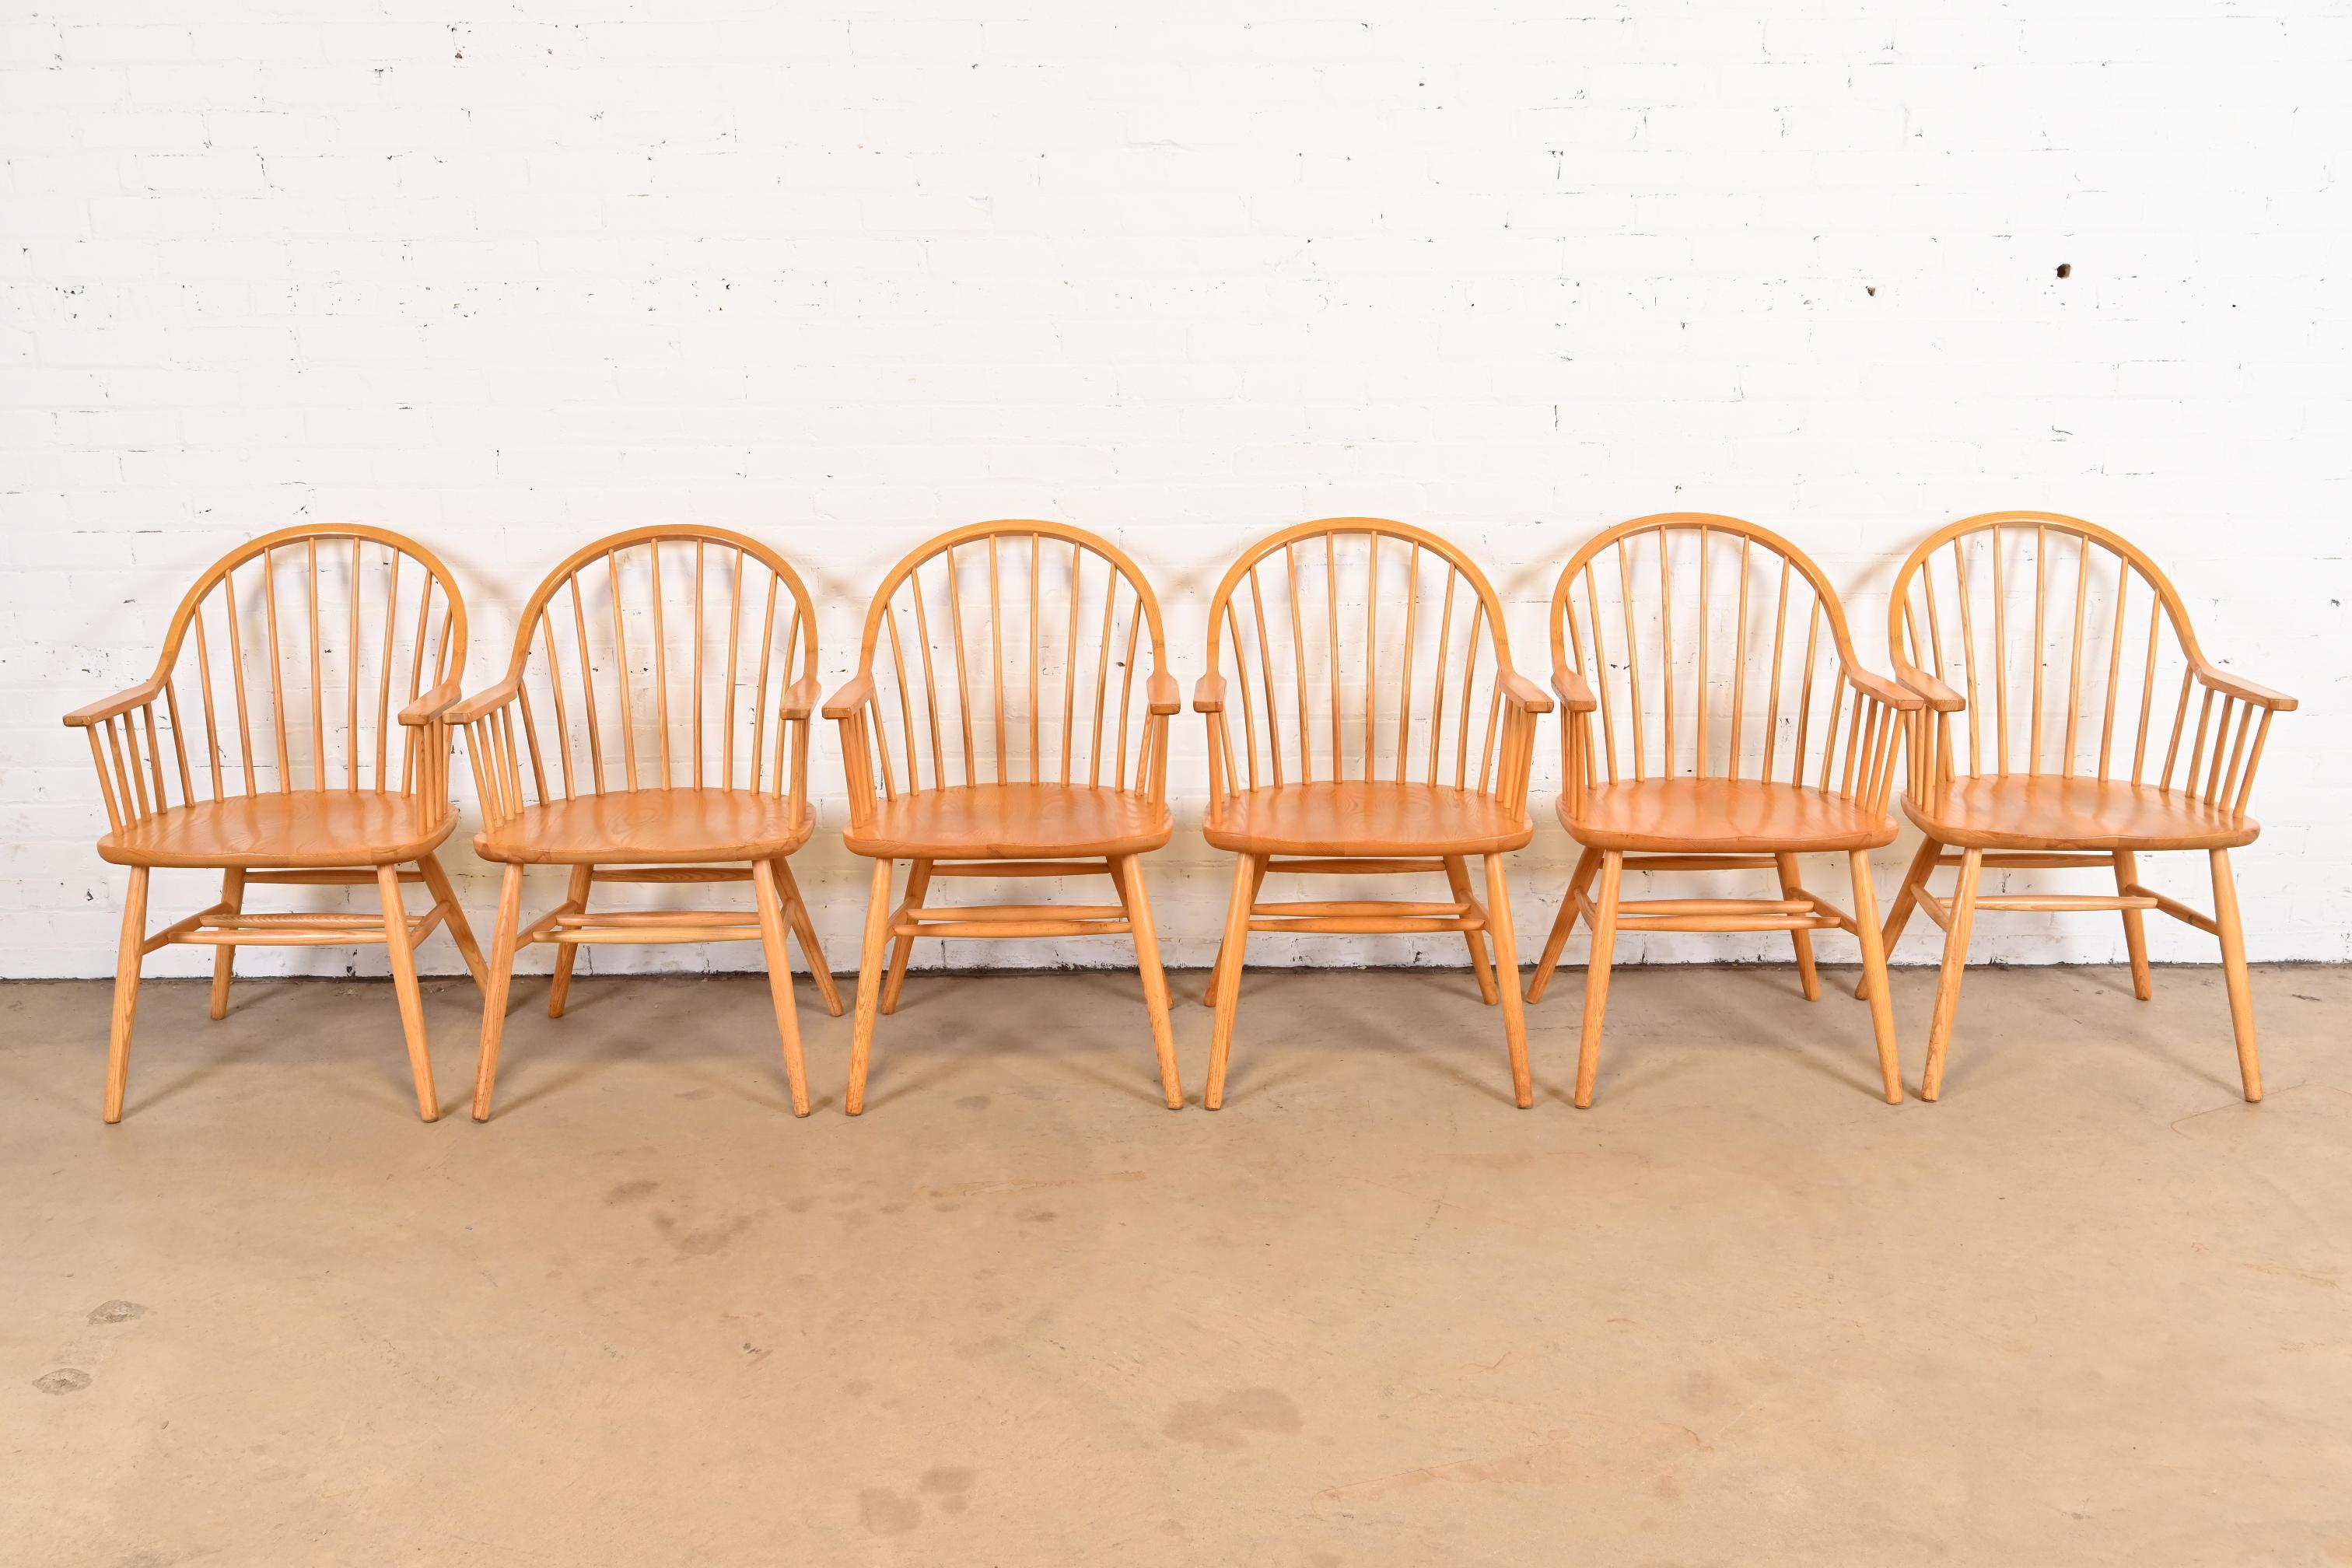 Magnifique ensemble de six fauteuils de salle à manger en chêne massif de style Windsor américain.

Par Claude Bunyard pour Nichols & Stone

États-Unis, vers les années 1980

Dimensions : 22 